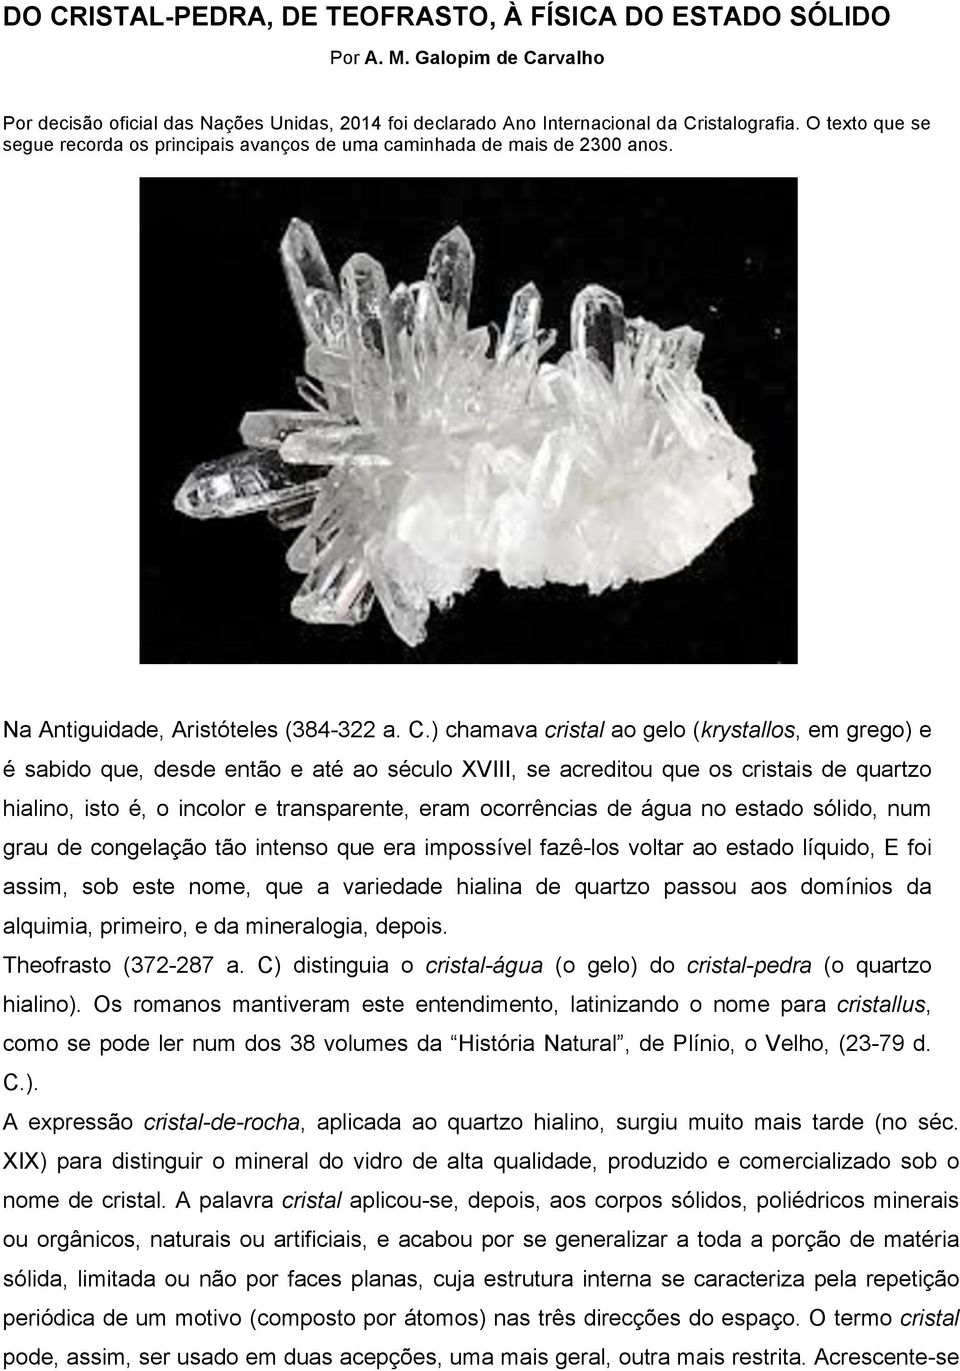 ) chamava cristal ao gelo (krystallos, em grego) e é sabido que, desde então e até ao século XVIII, se acreditou que os cristais de quartzo hialino, isto é, o incolor e transparente, eram ocorrências